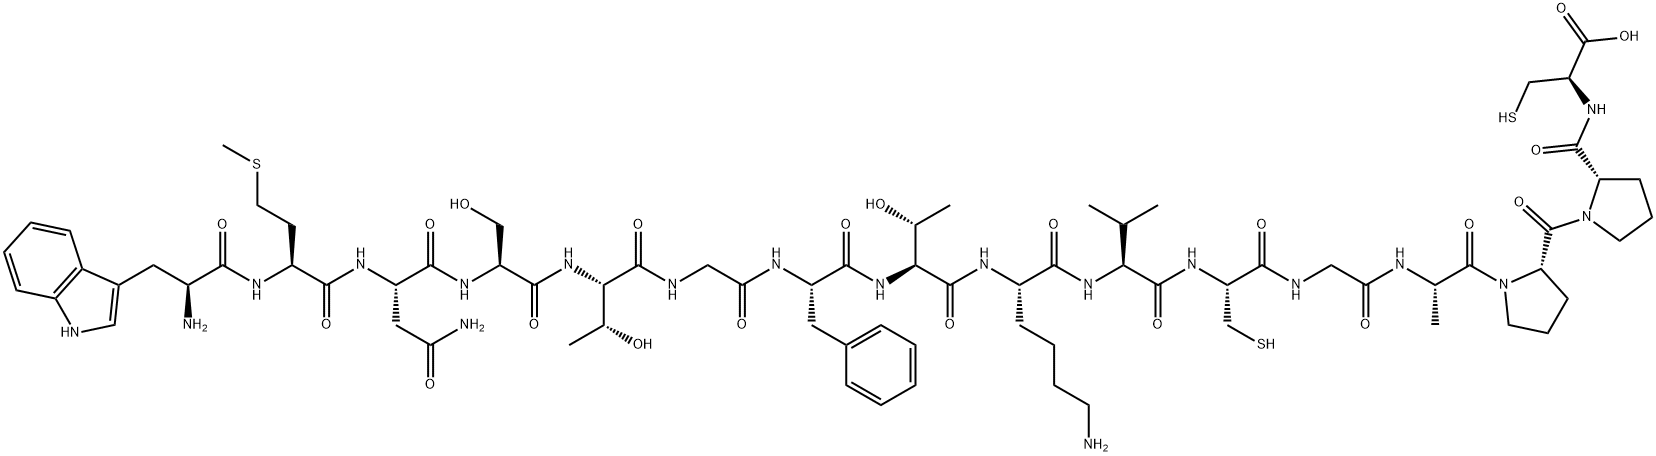 290362-31-1 L-Cysteine, L-tryptophyl-L-methionyl-L-asparaginyl-L-seryl-L-threonylglycyl-L-phenylalanyl-L-threonyl-L-lysyl-L-valyl-L-cysteinylglycyl-L-alanyl-L-prolyl-L-prolyl-